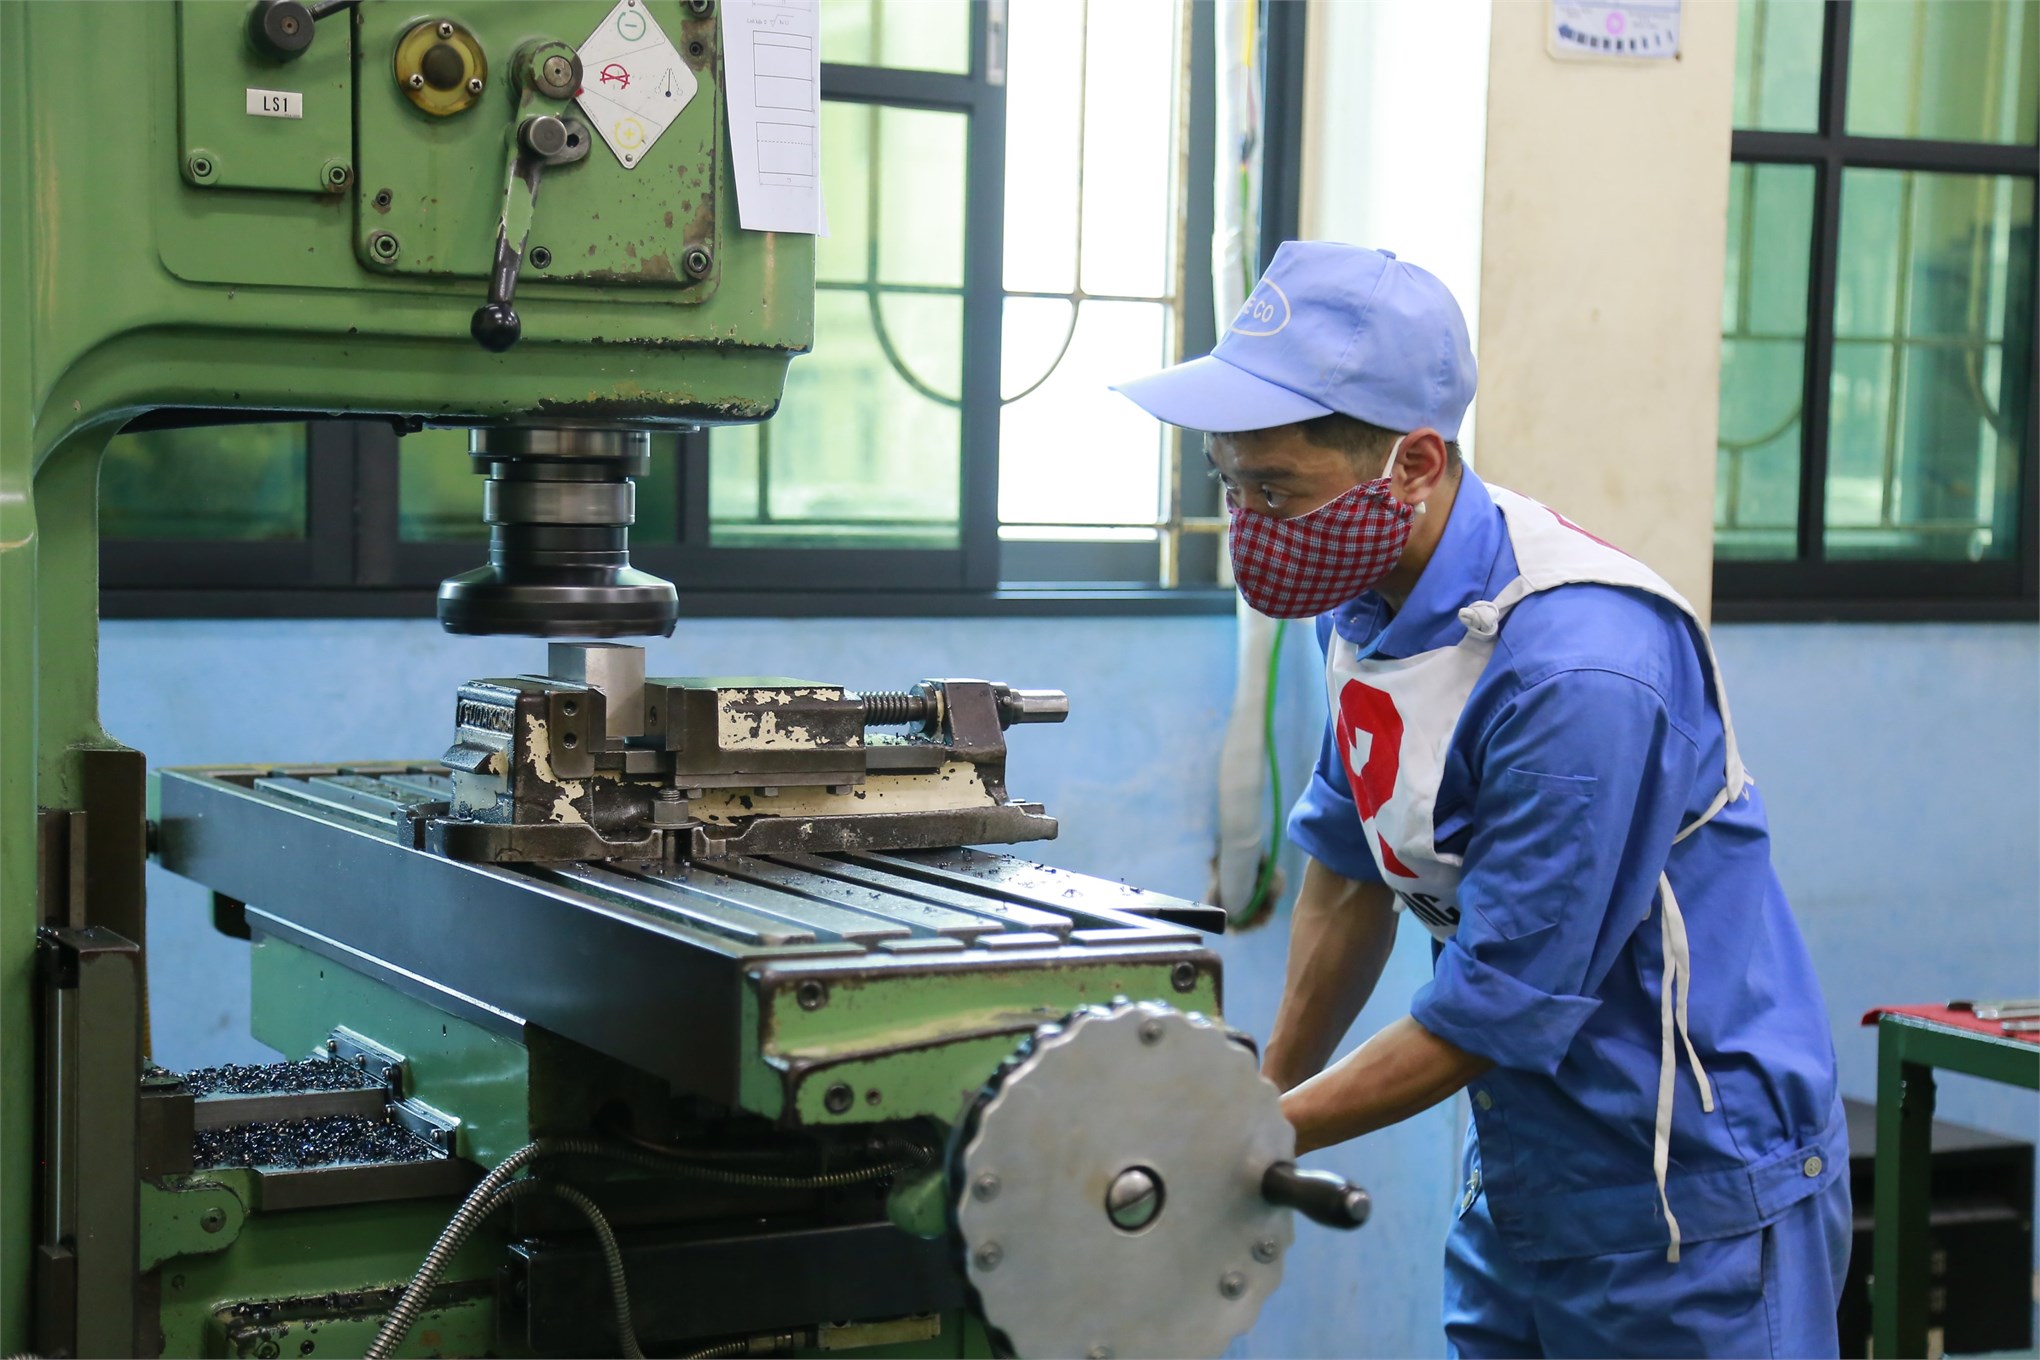 Trường Đại học Công nghiệp Hà Nội tổ chức đánh giá kỹ năng nghề Phay vạn năng bậc 3 theo tiêu chuẩn Nhật Bản